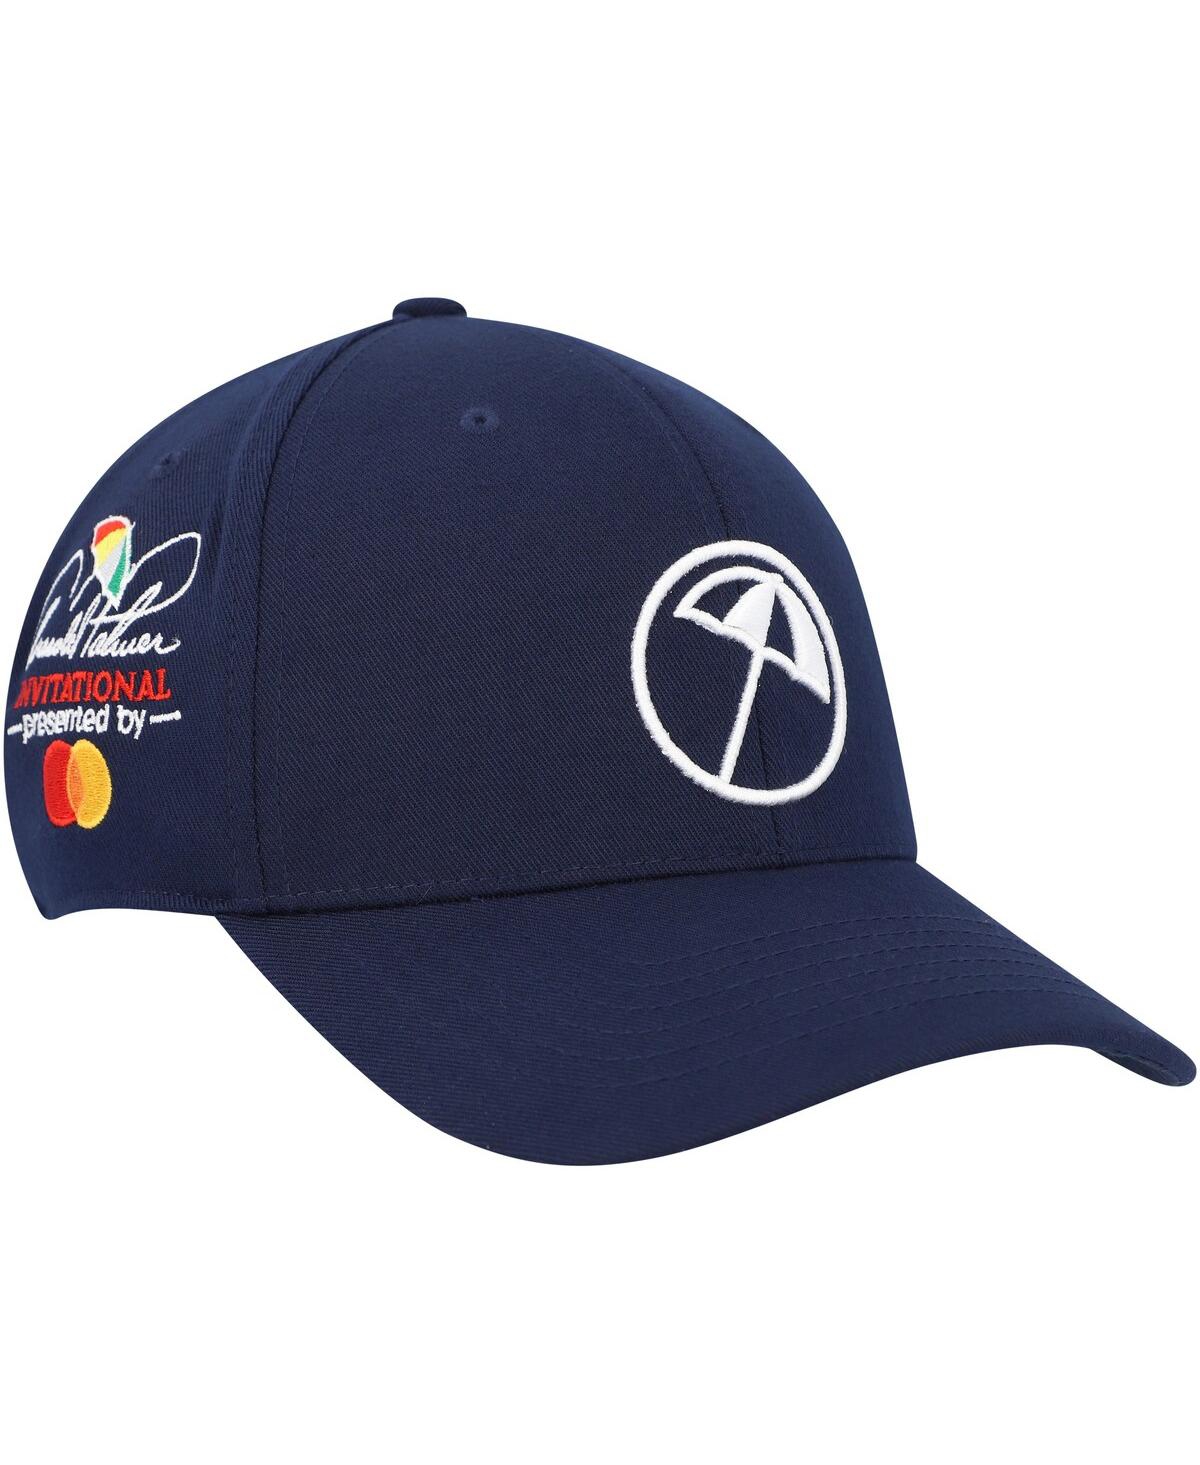 Men's Puma Navy Arnold Palmer Invitational Umbrella Adjustable Hat - Navy